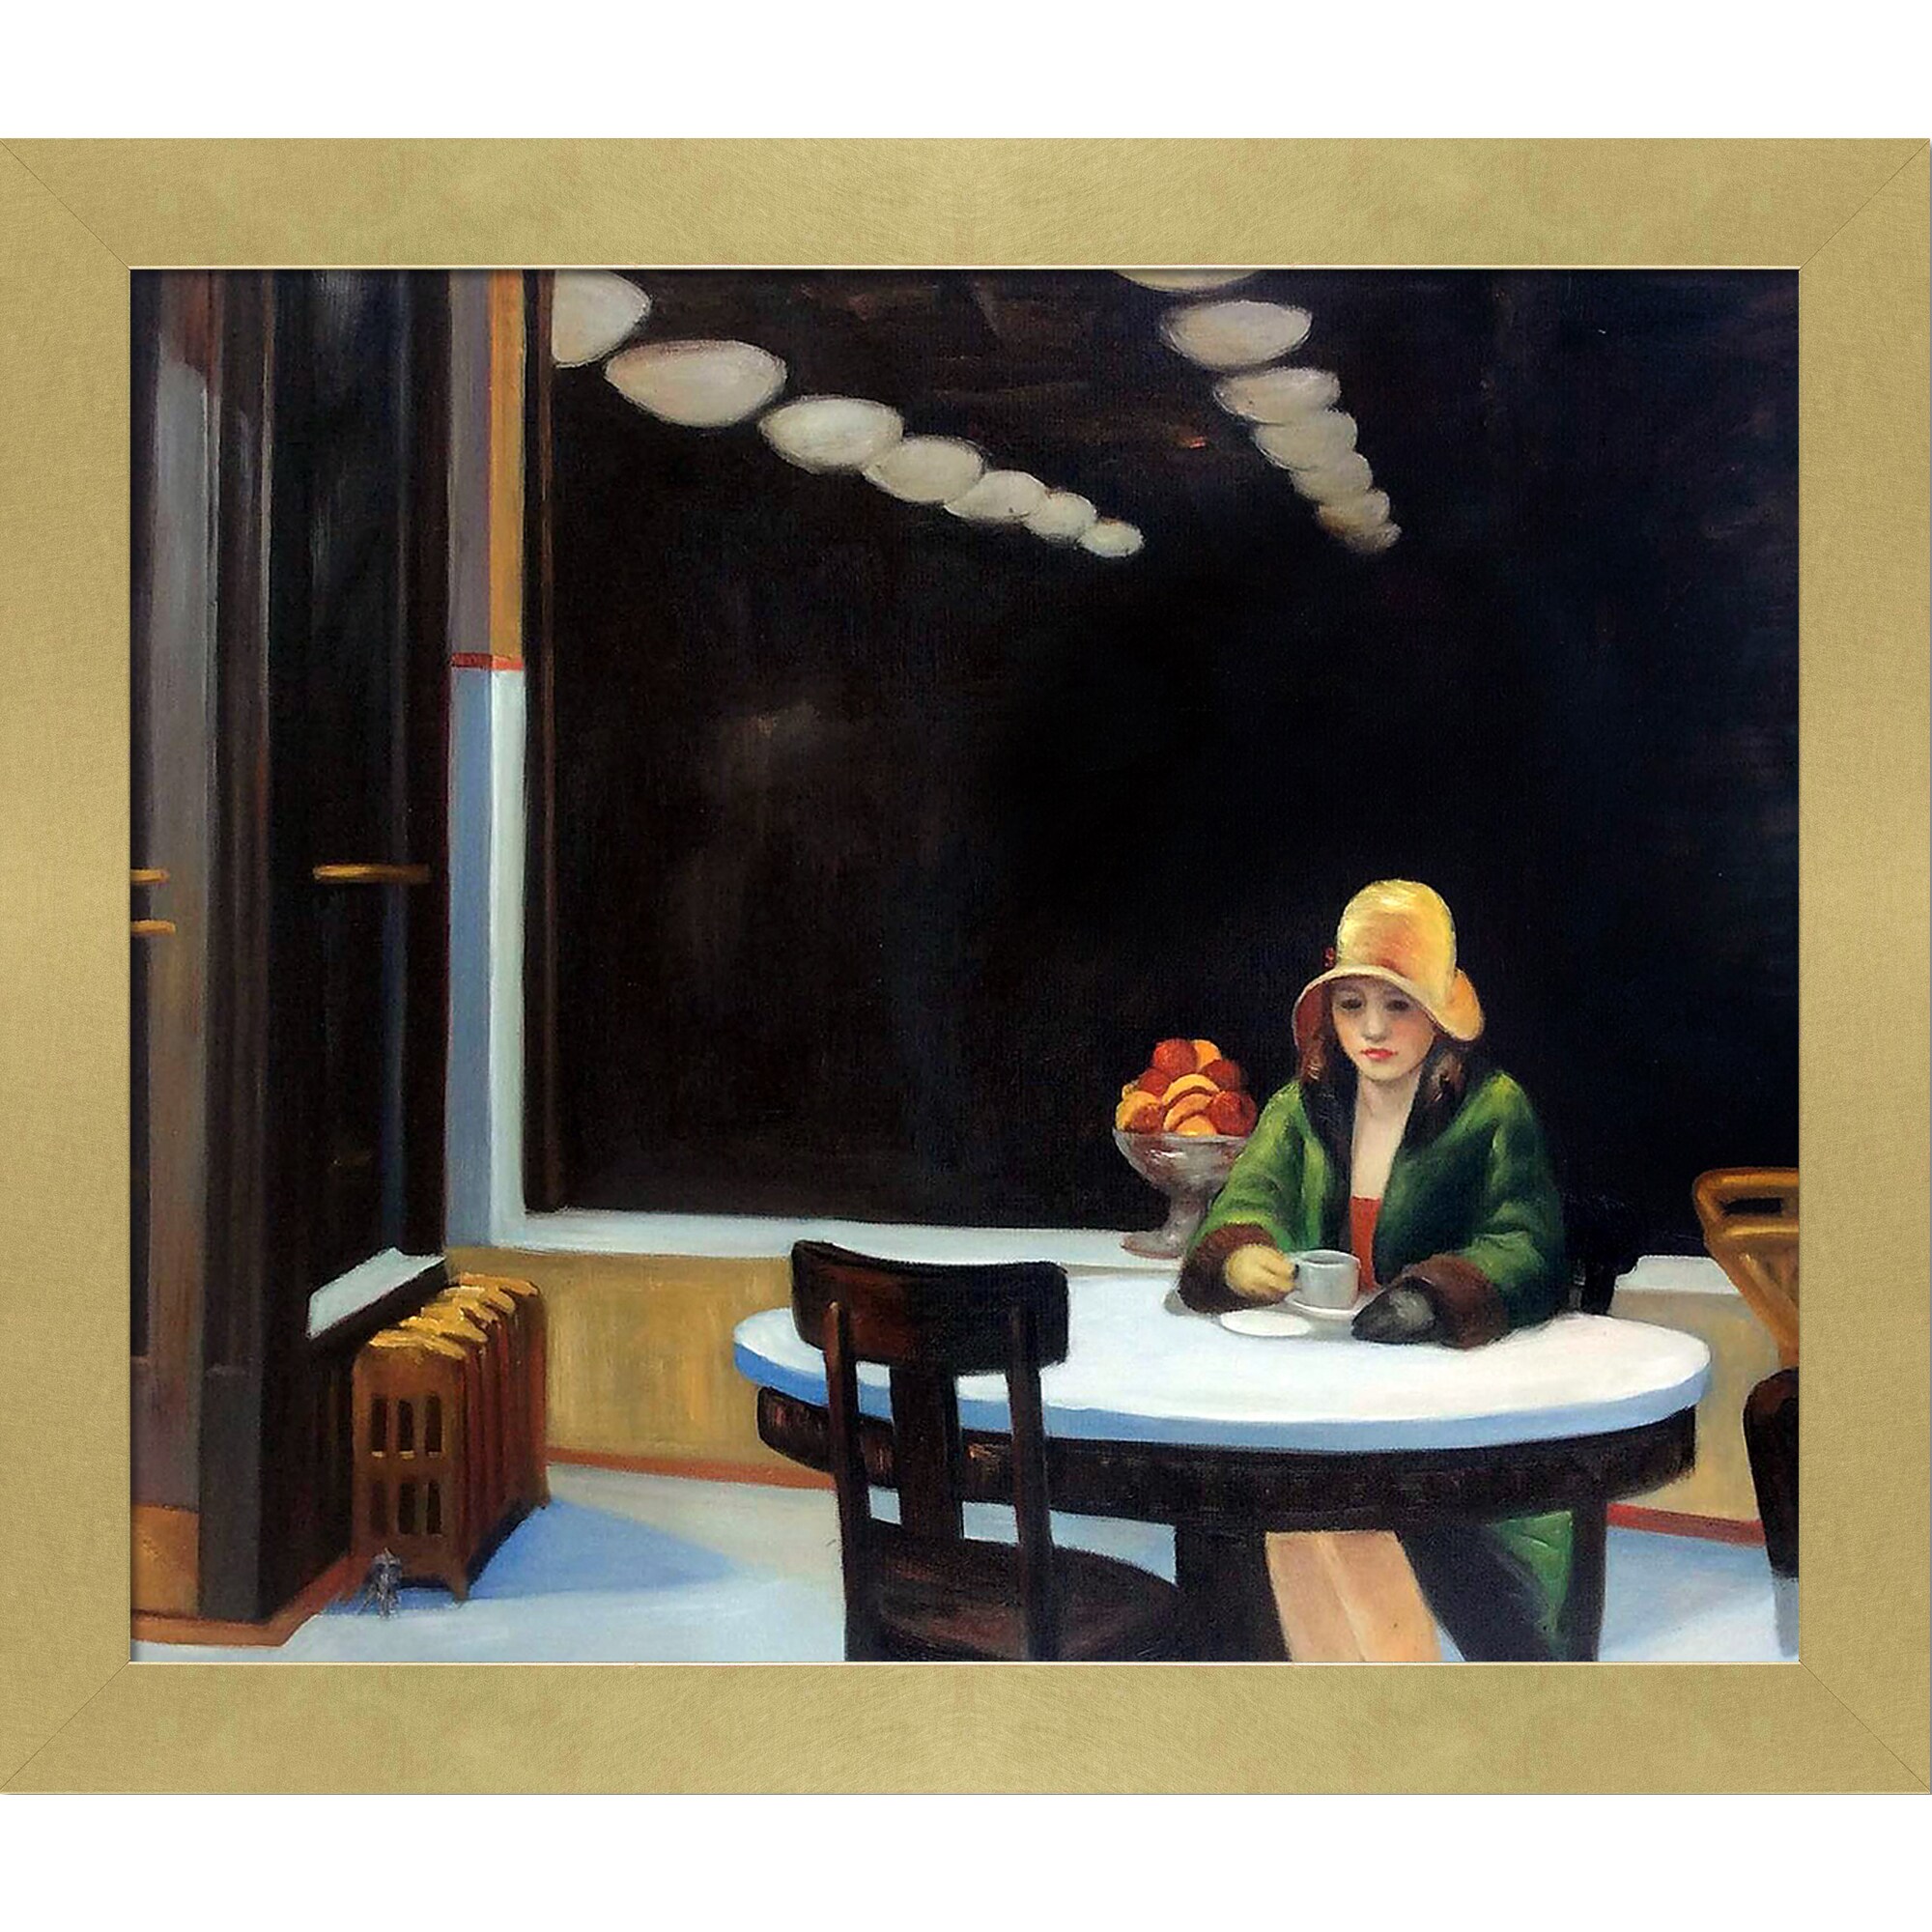 Automat Edward Hopper Canvas or Print Wall Art